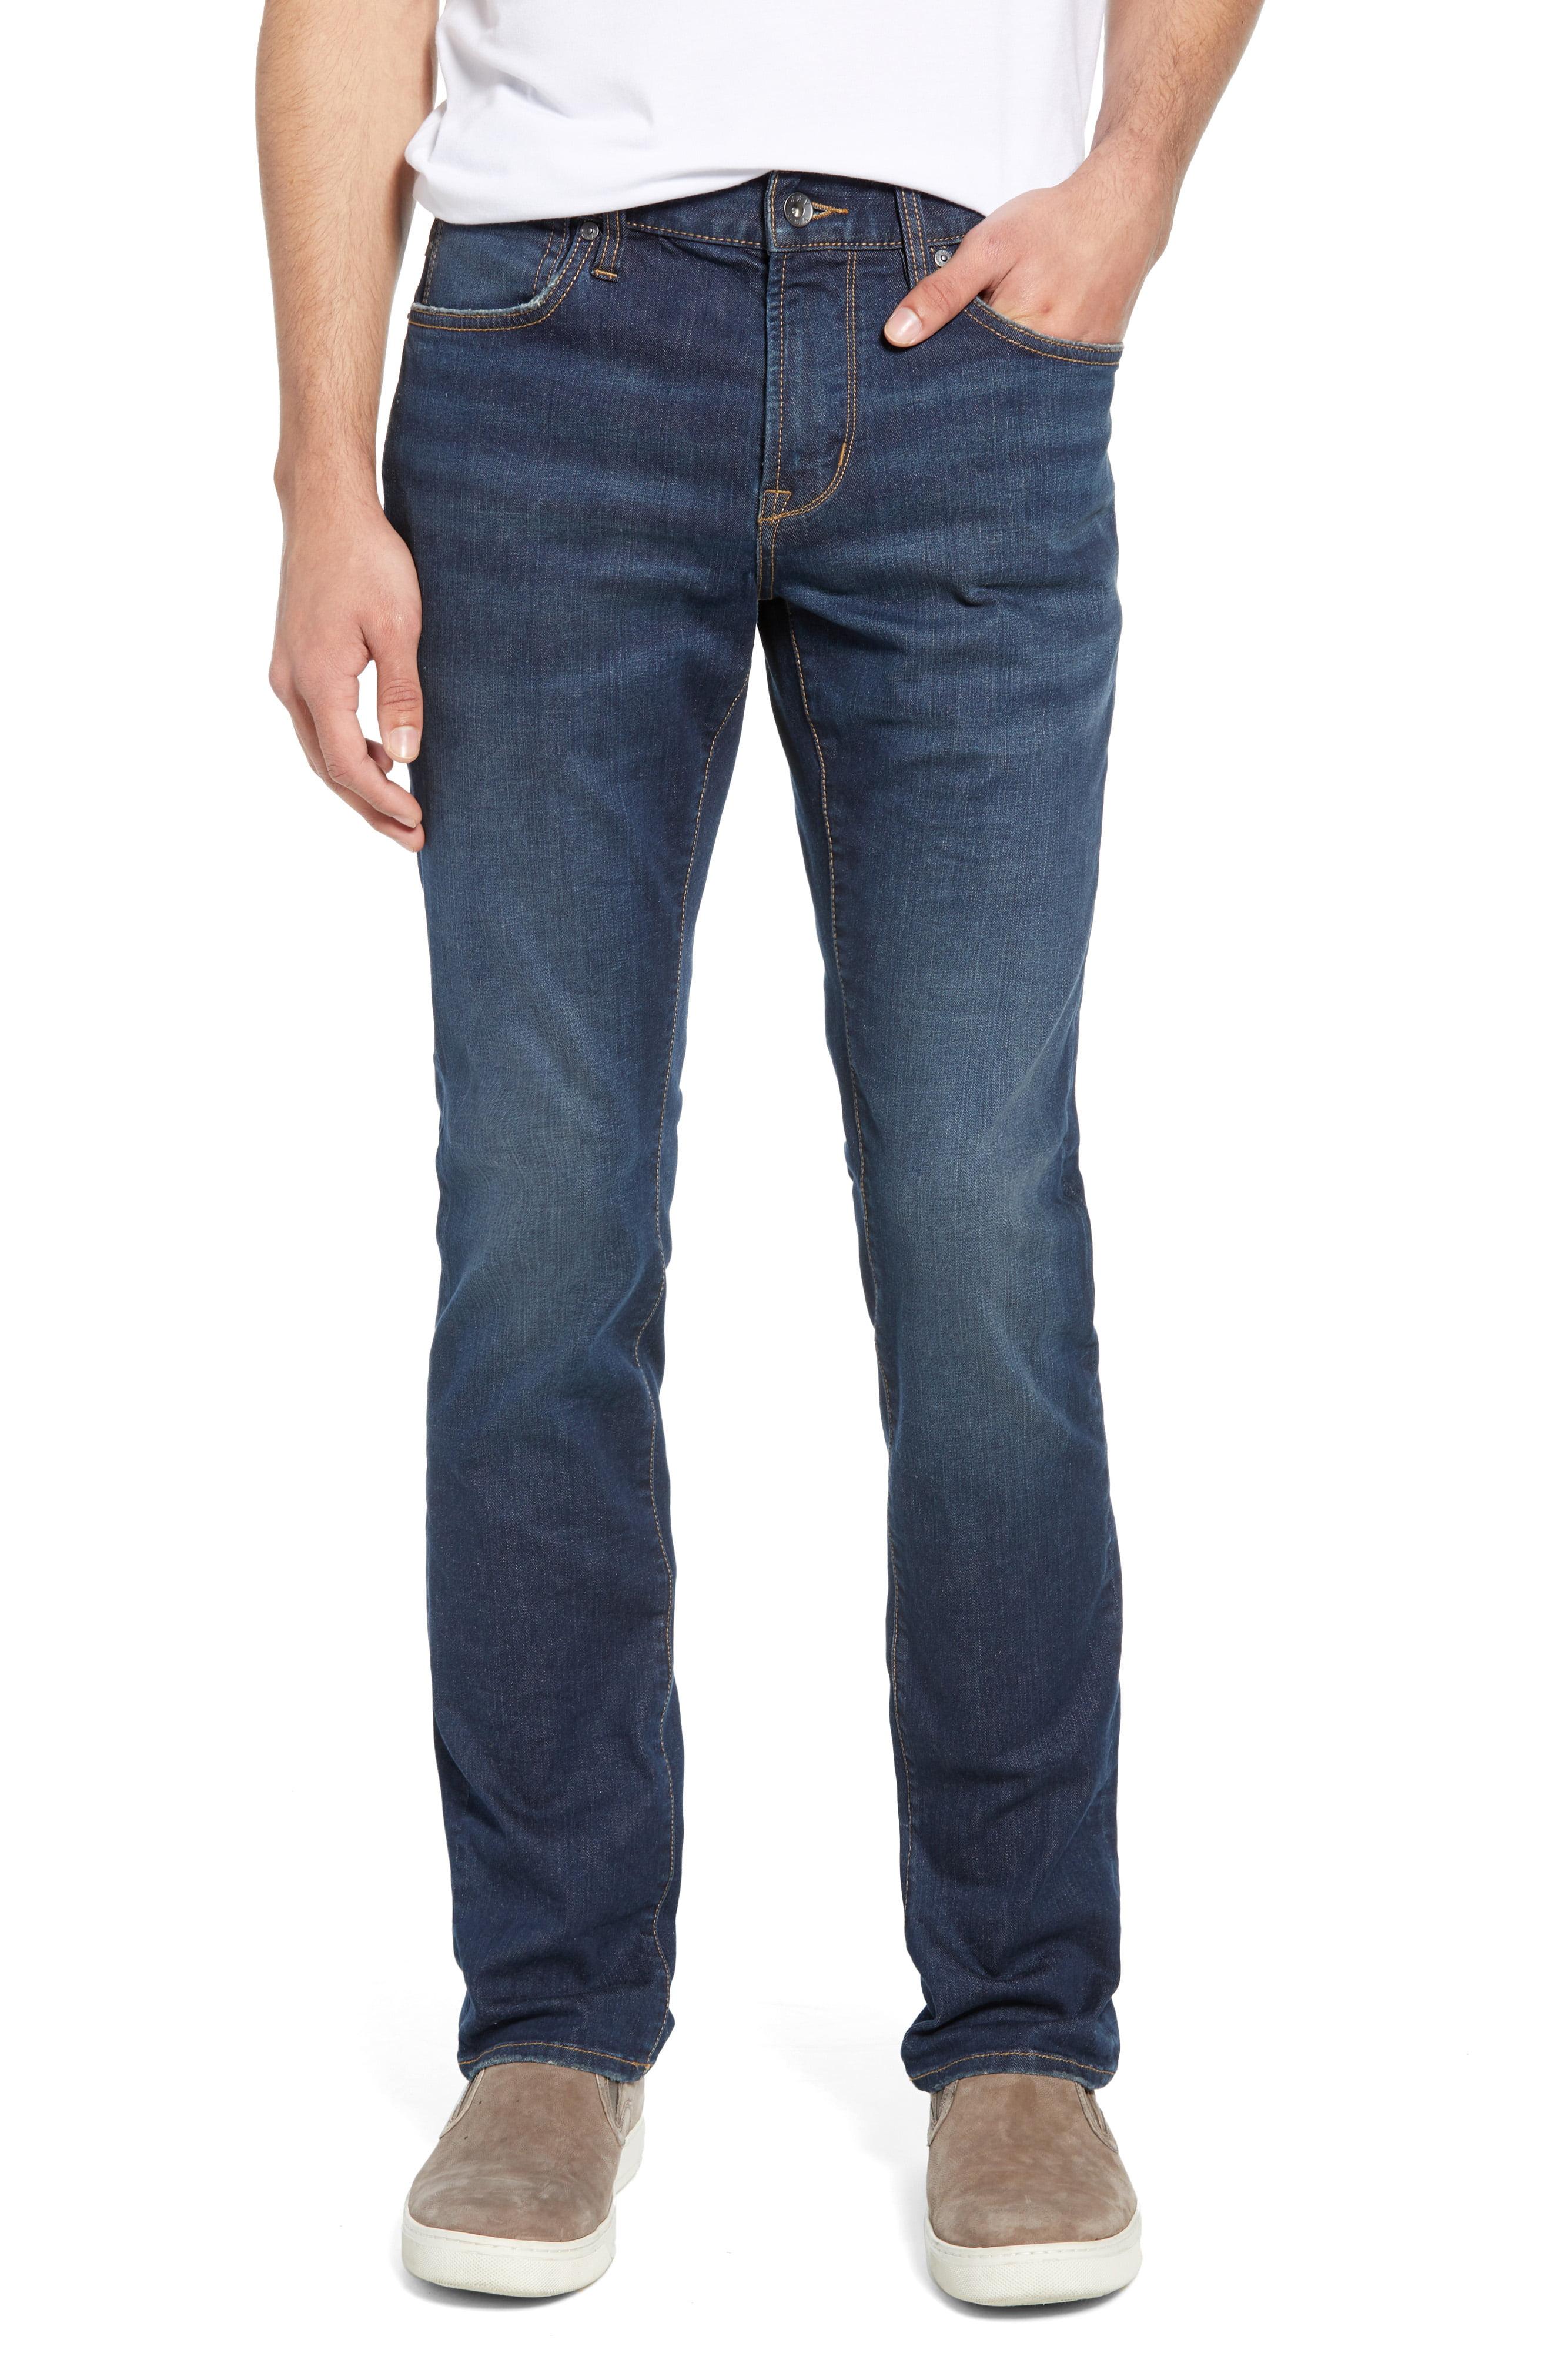 Lyst - John Varvatos Bowery Slim Straight-leg Jeans in Blue for Men